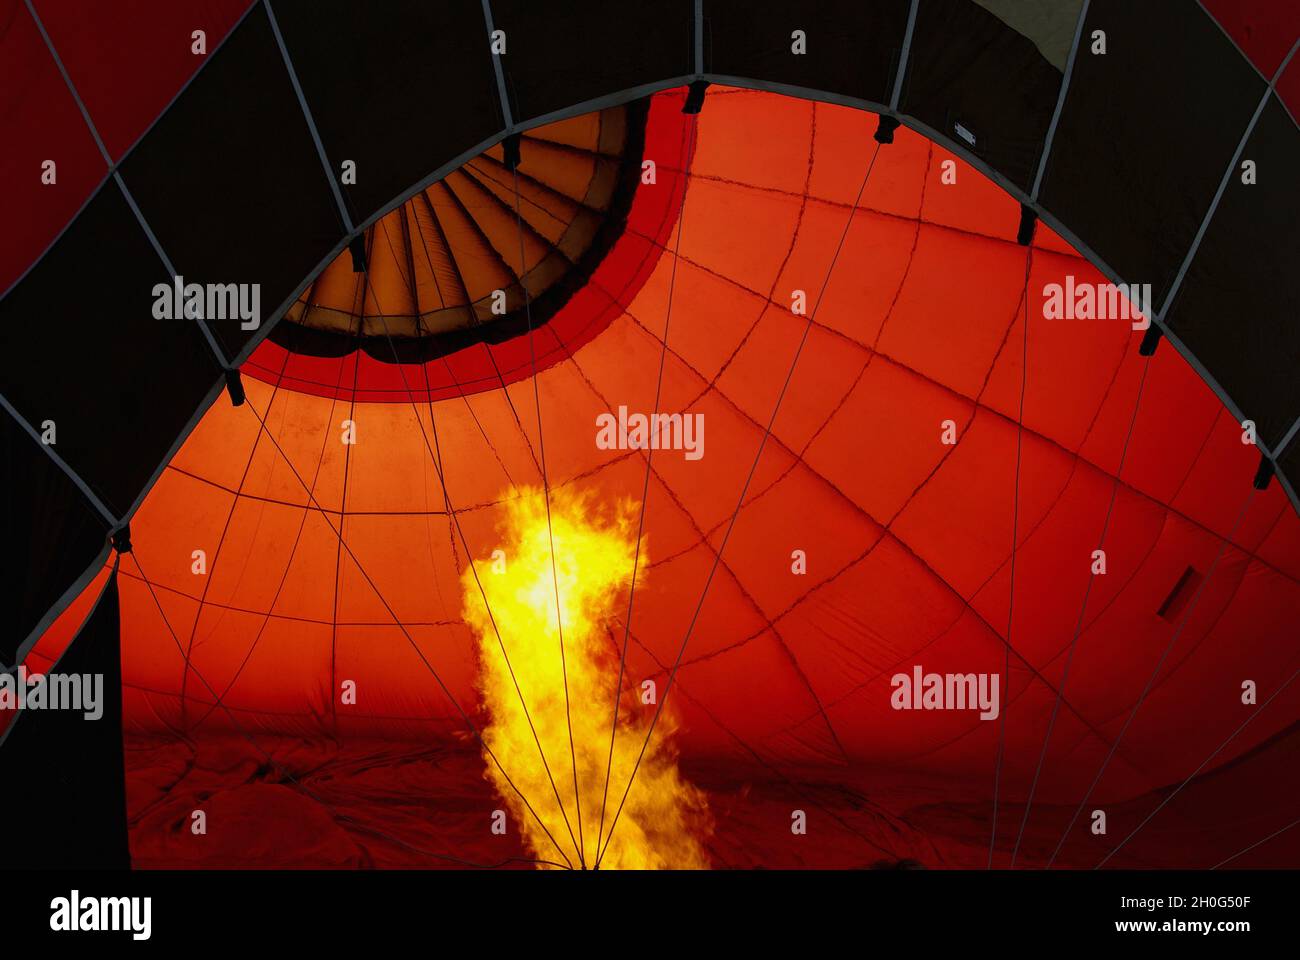 Un brûleur souffle de l'air chaud dans un ballon d'air chaud Banque D'Images